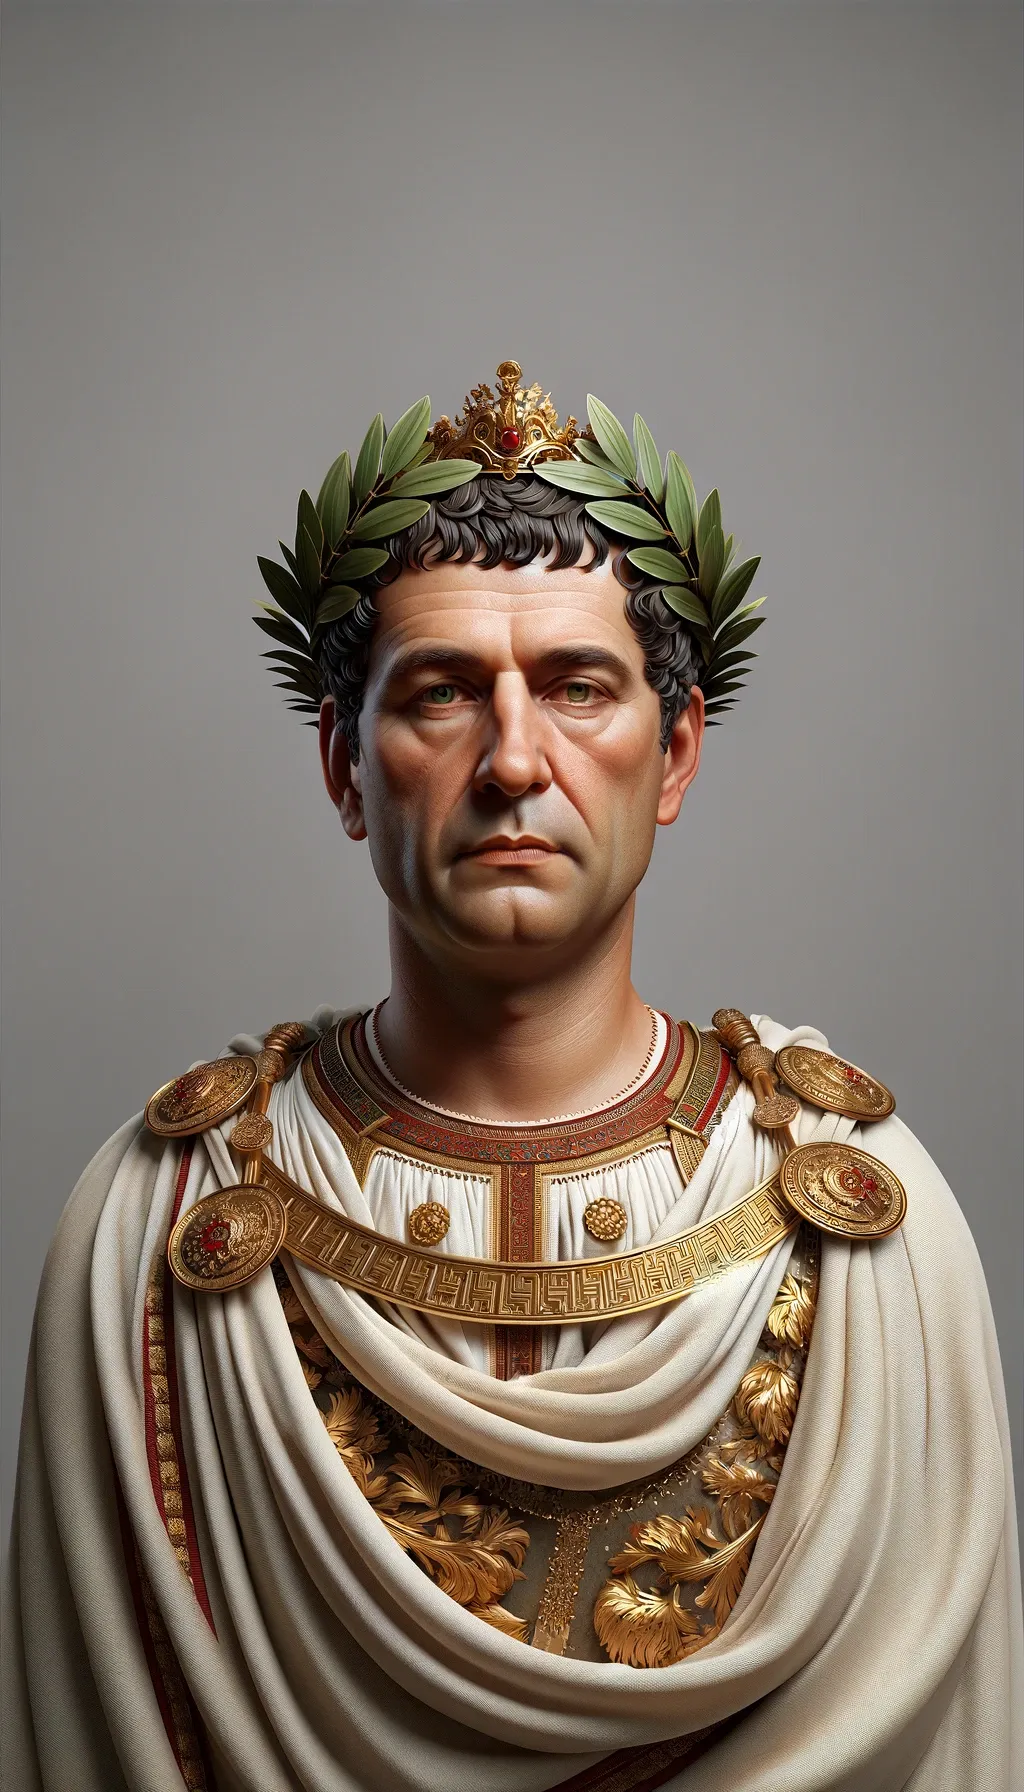 Emperor Constantine.